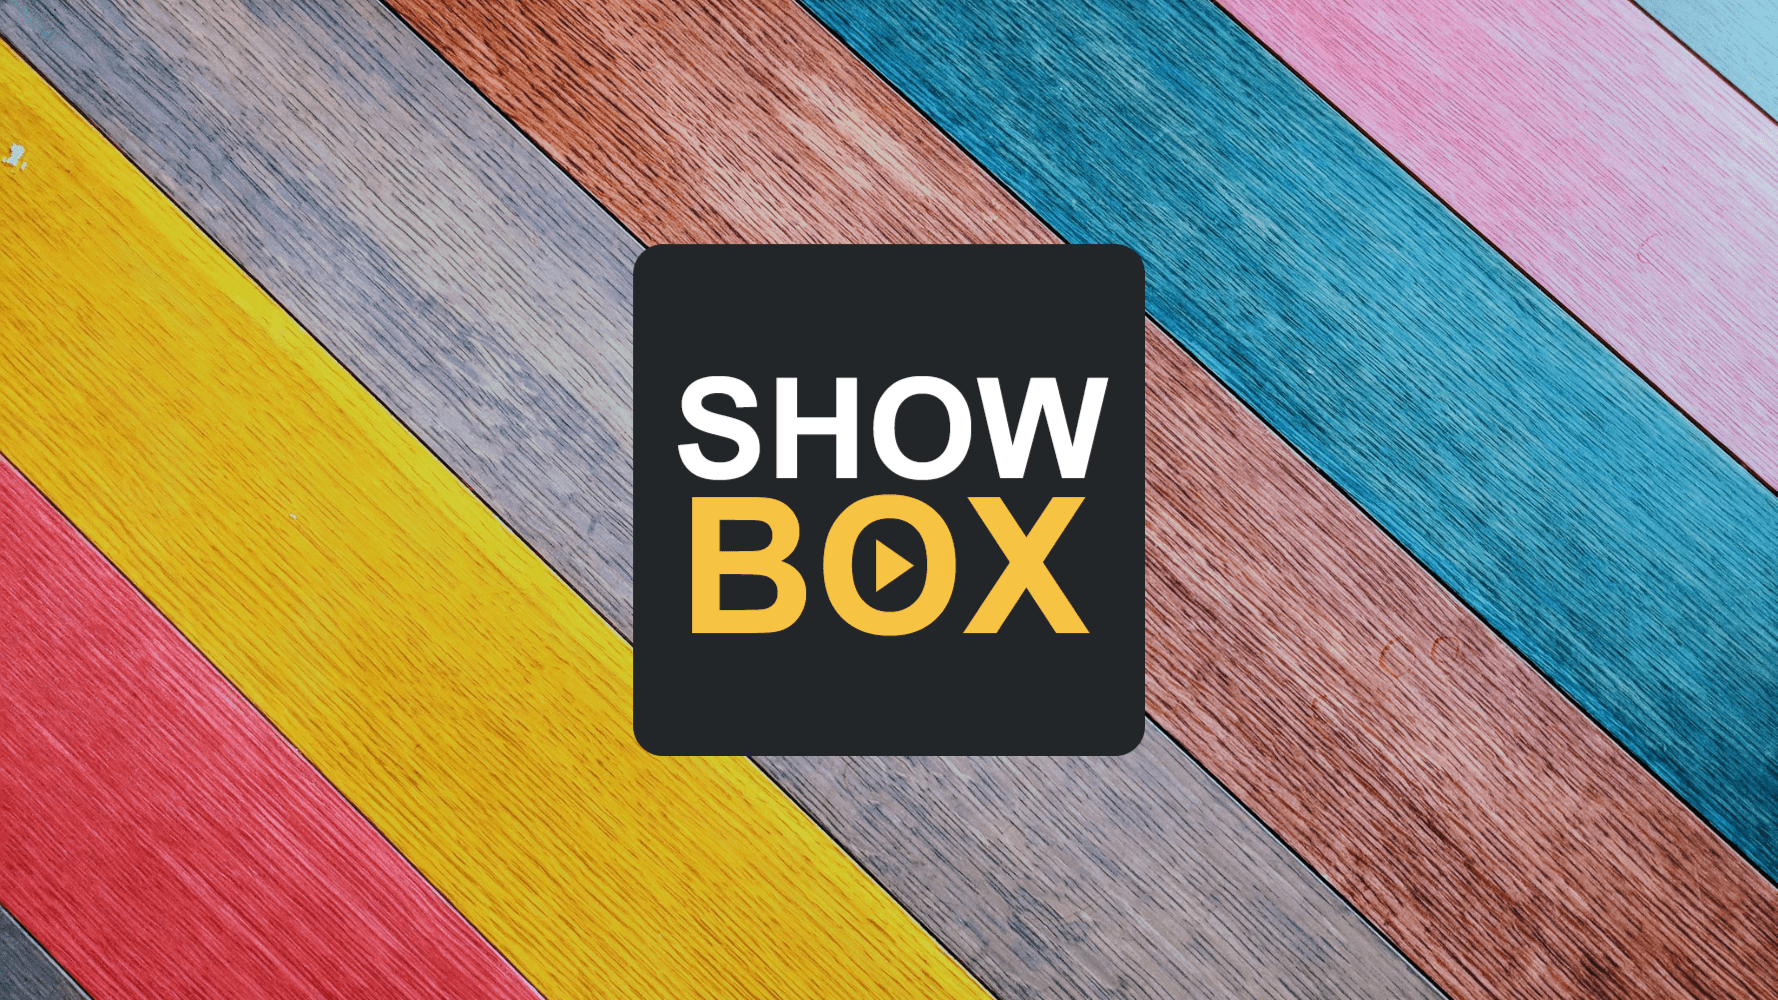 Showbox Not Working - The 5 Best Showbox Alternatives in 2022